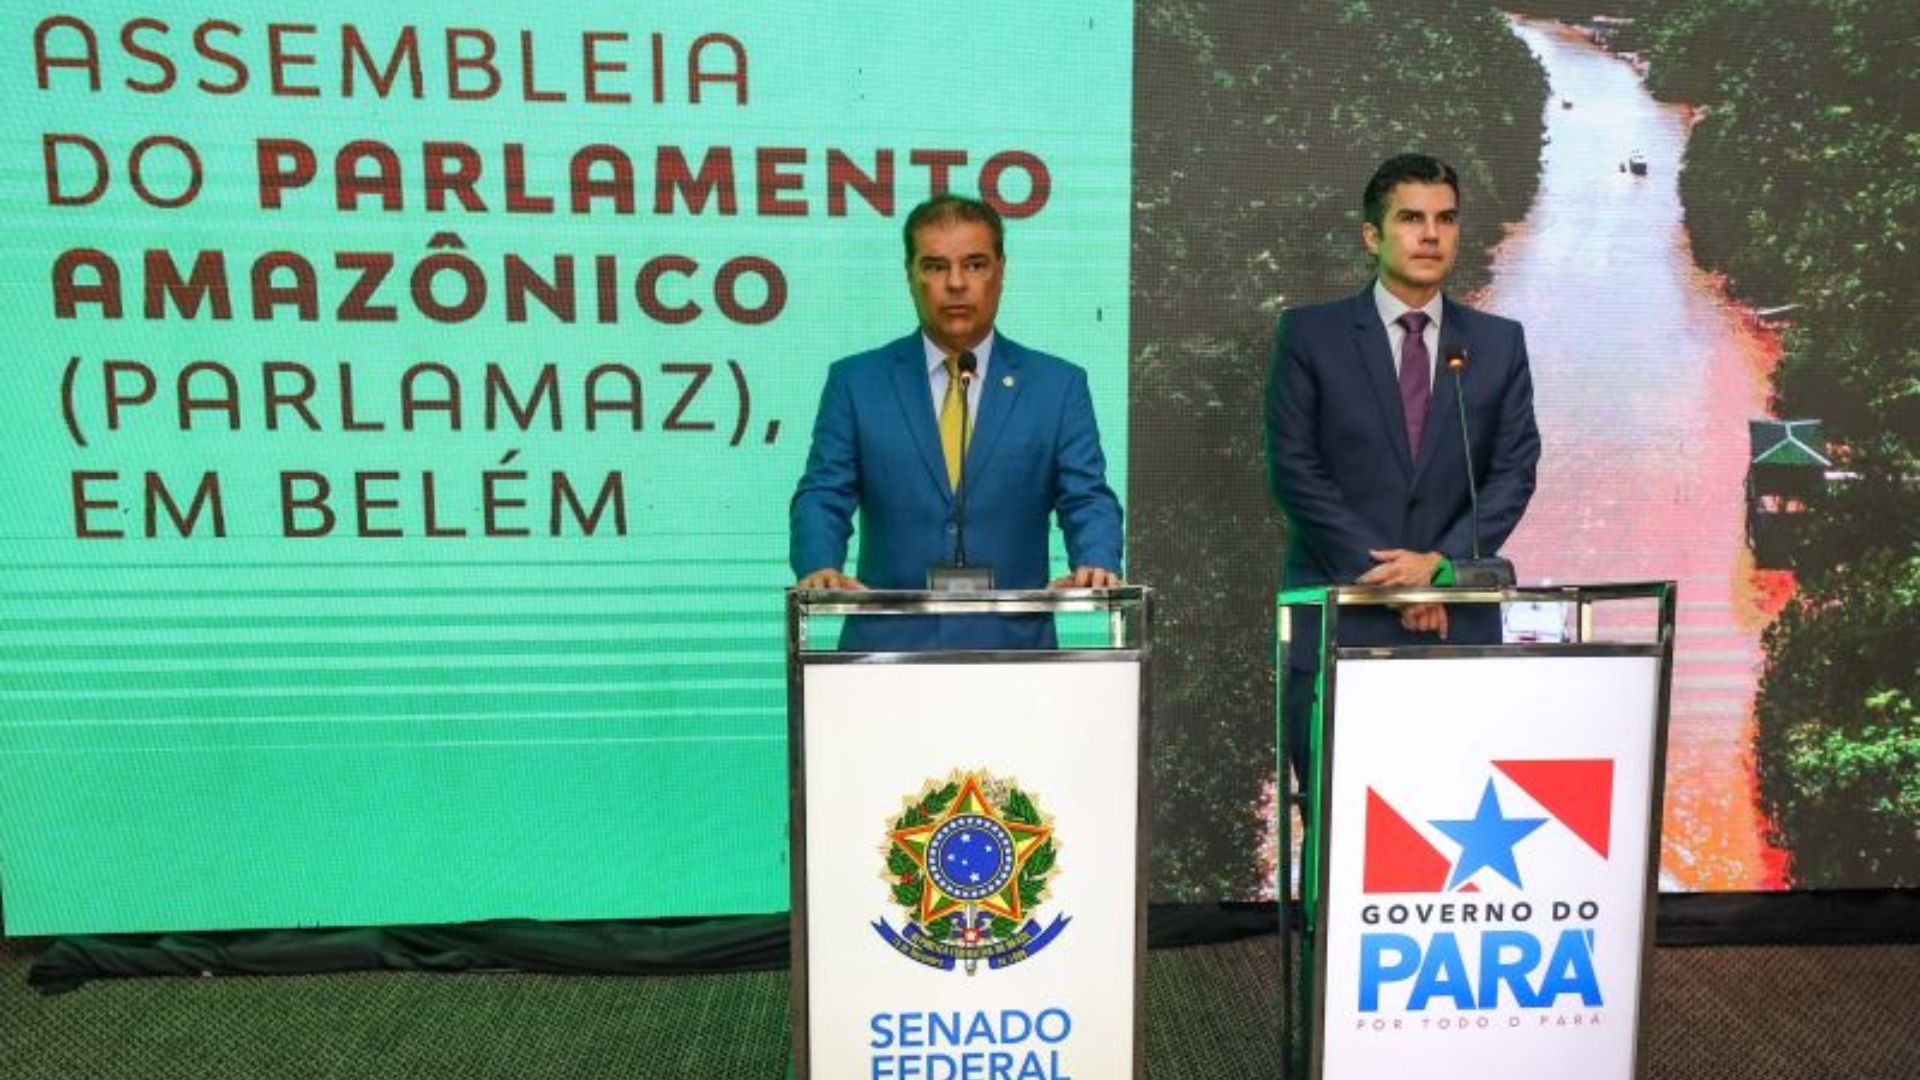 Helder Barbalho fala sobre desenvolvimento socioeconômico e ambiental em Assembleia do Parlamento Amazônico